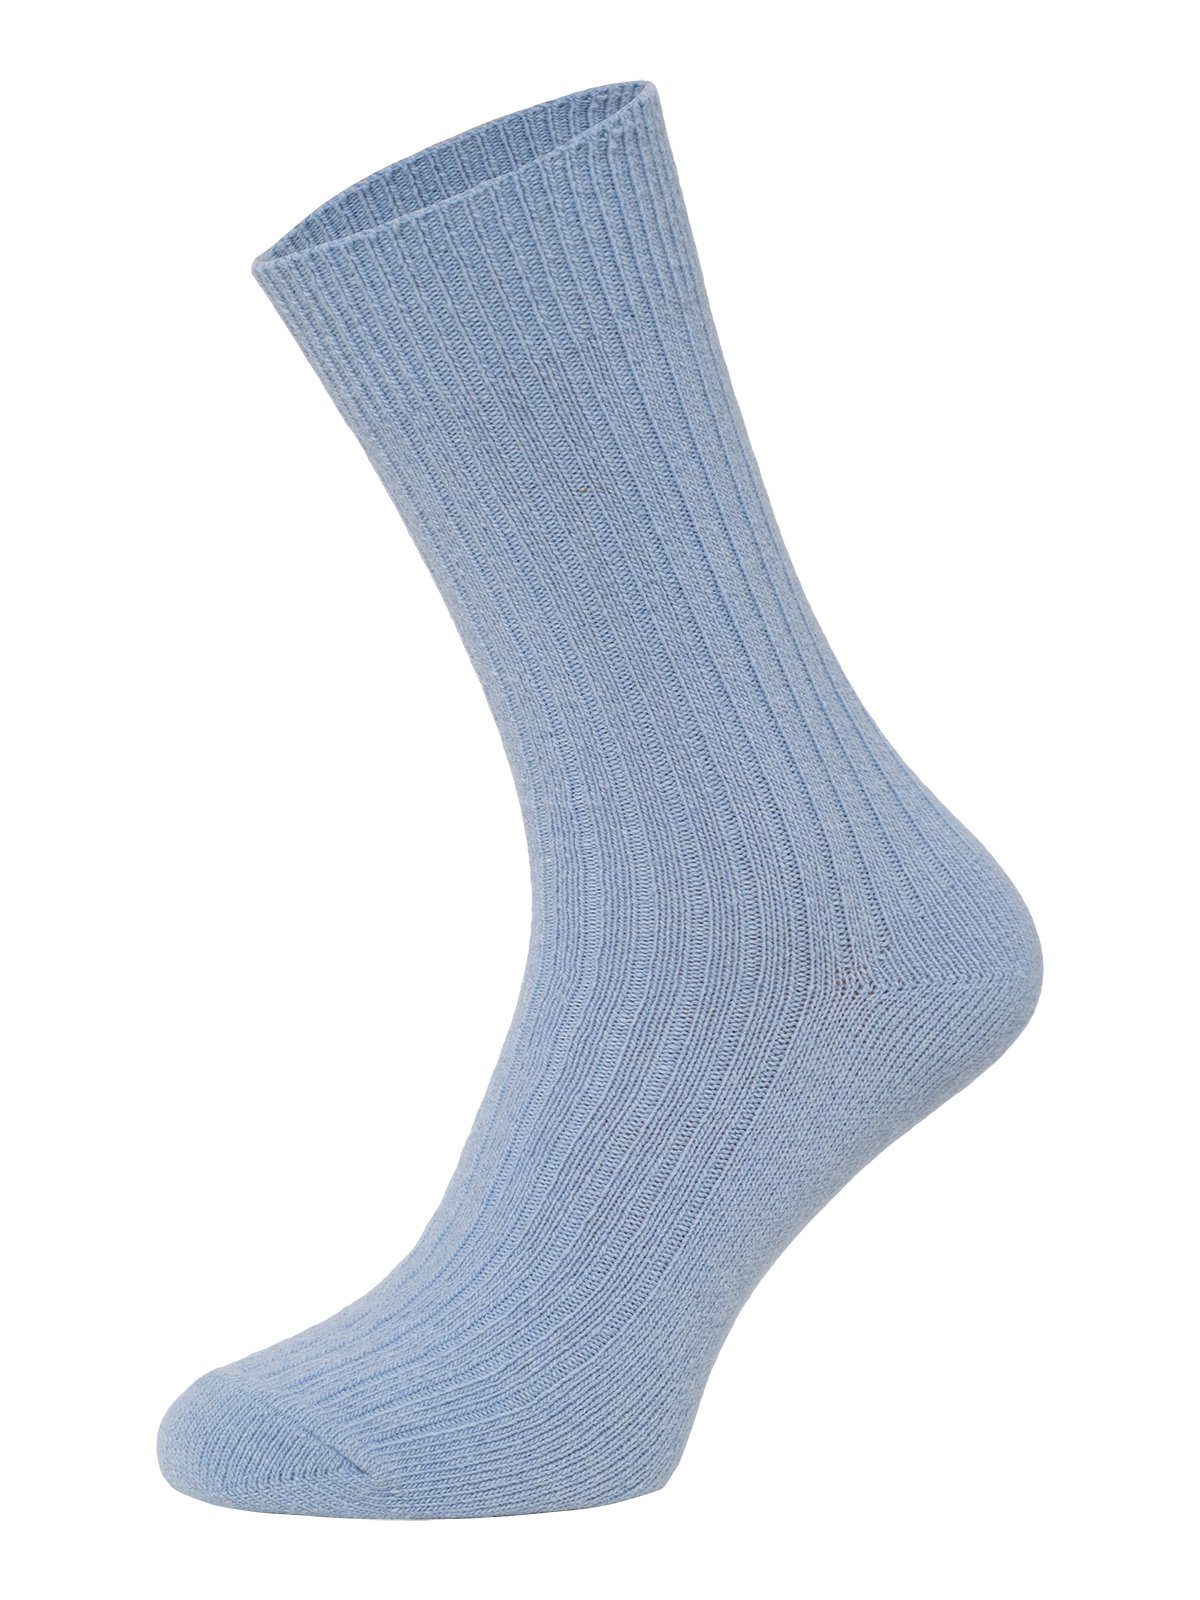 HomeOfSocks Socken Dünne Bunte Wollsocken mit 72% Wollanteil Hochwertige Uni Wollsocken Dünn Bunt Druckarm Hellblau